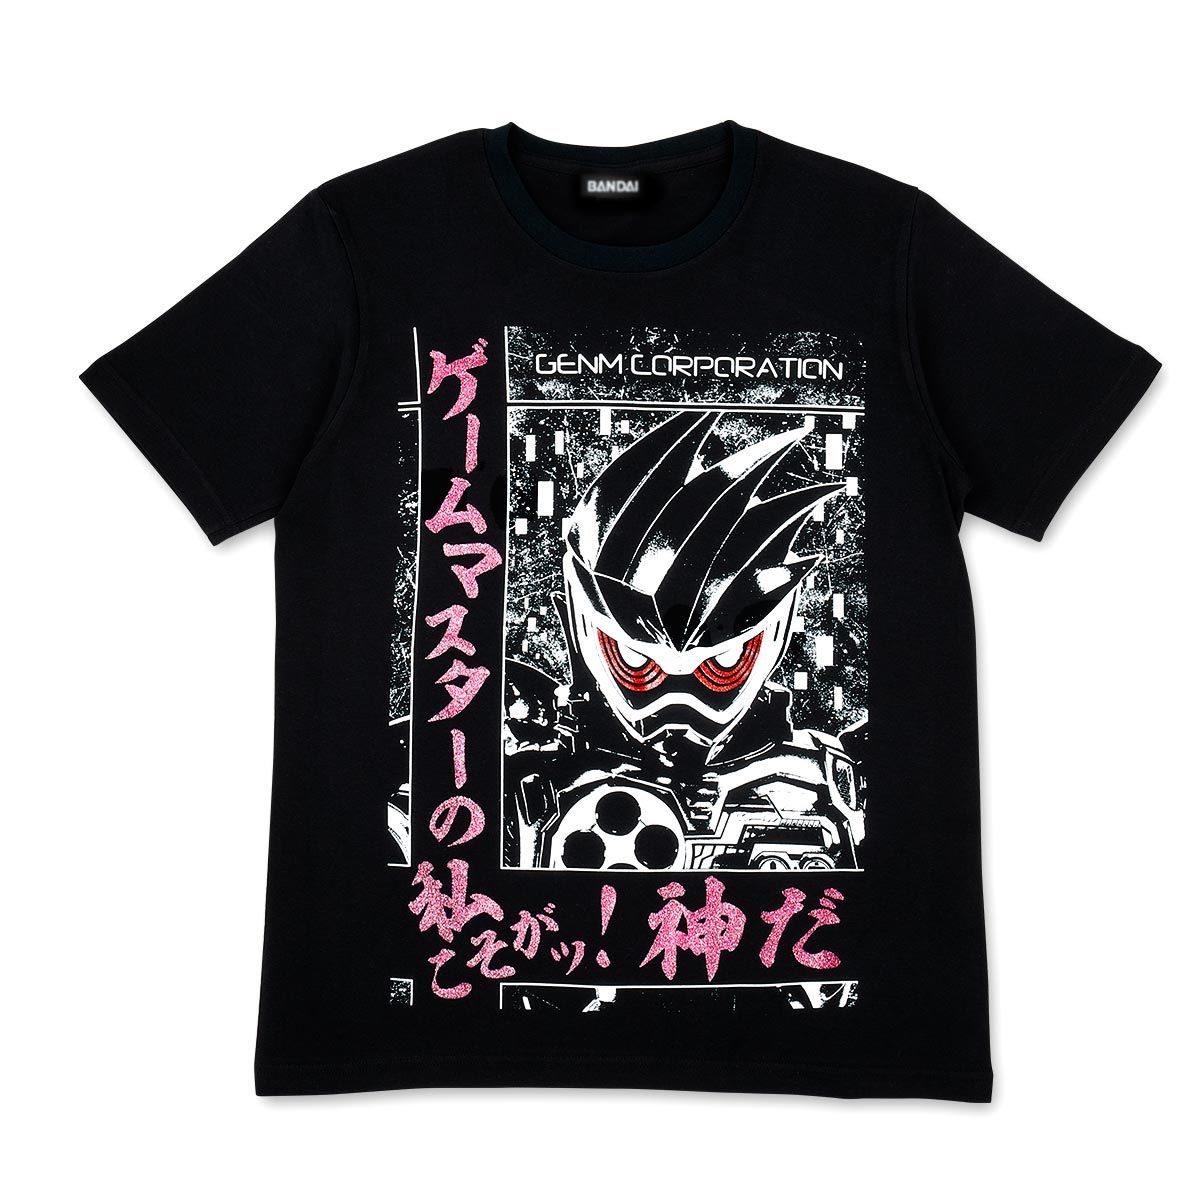 CEO Kamen Rider Decisive Quote T-shirts  (Kamen Rider Genm and Kamen Rider Cronus)